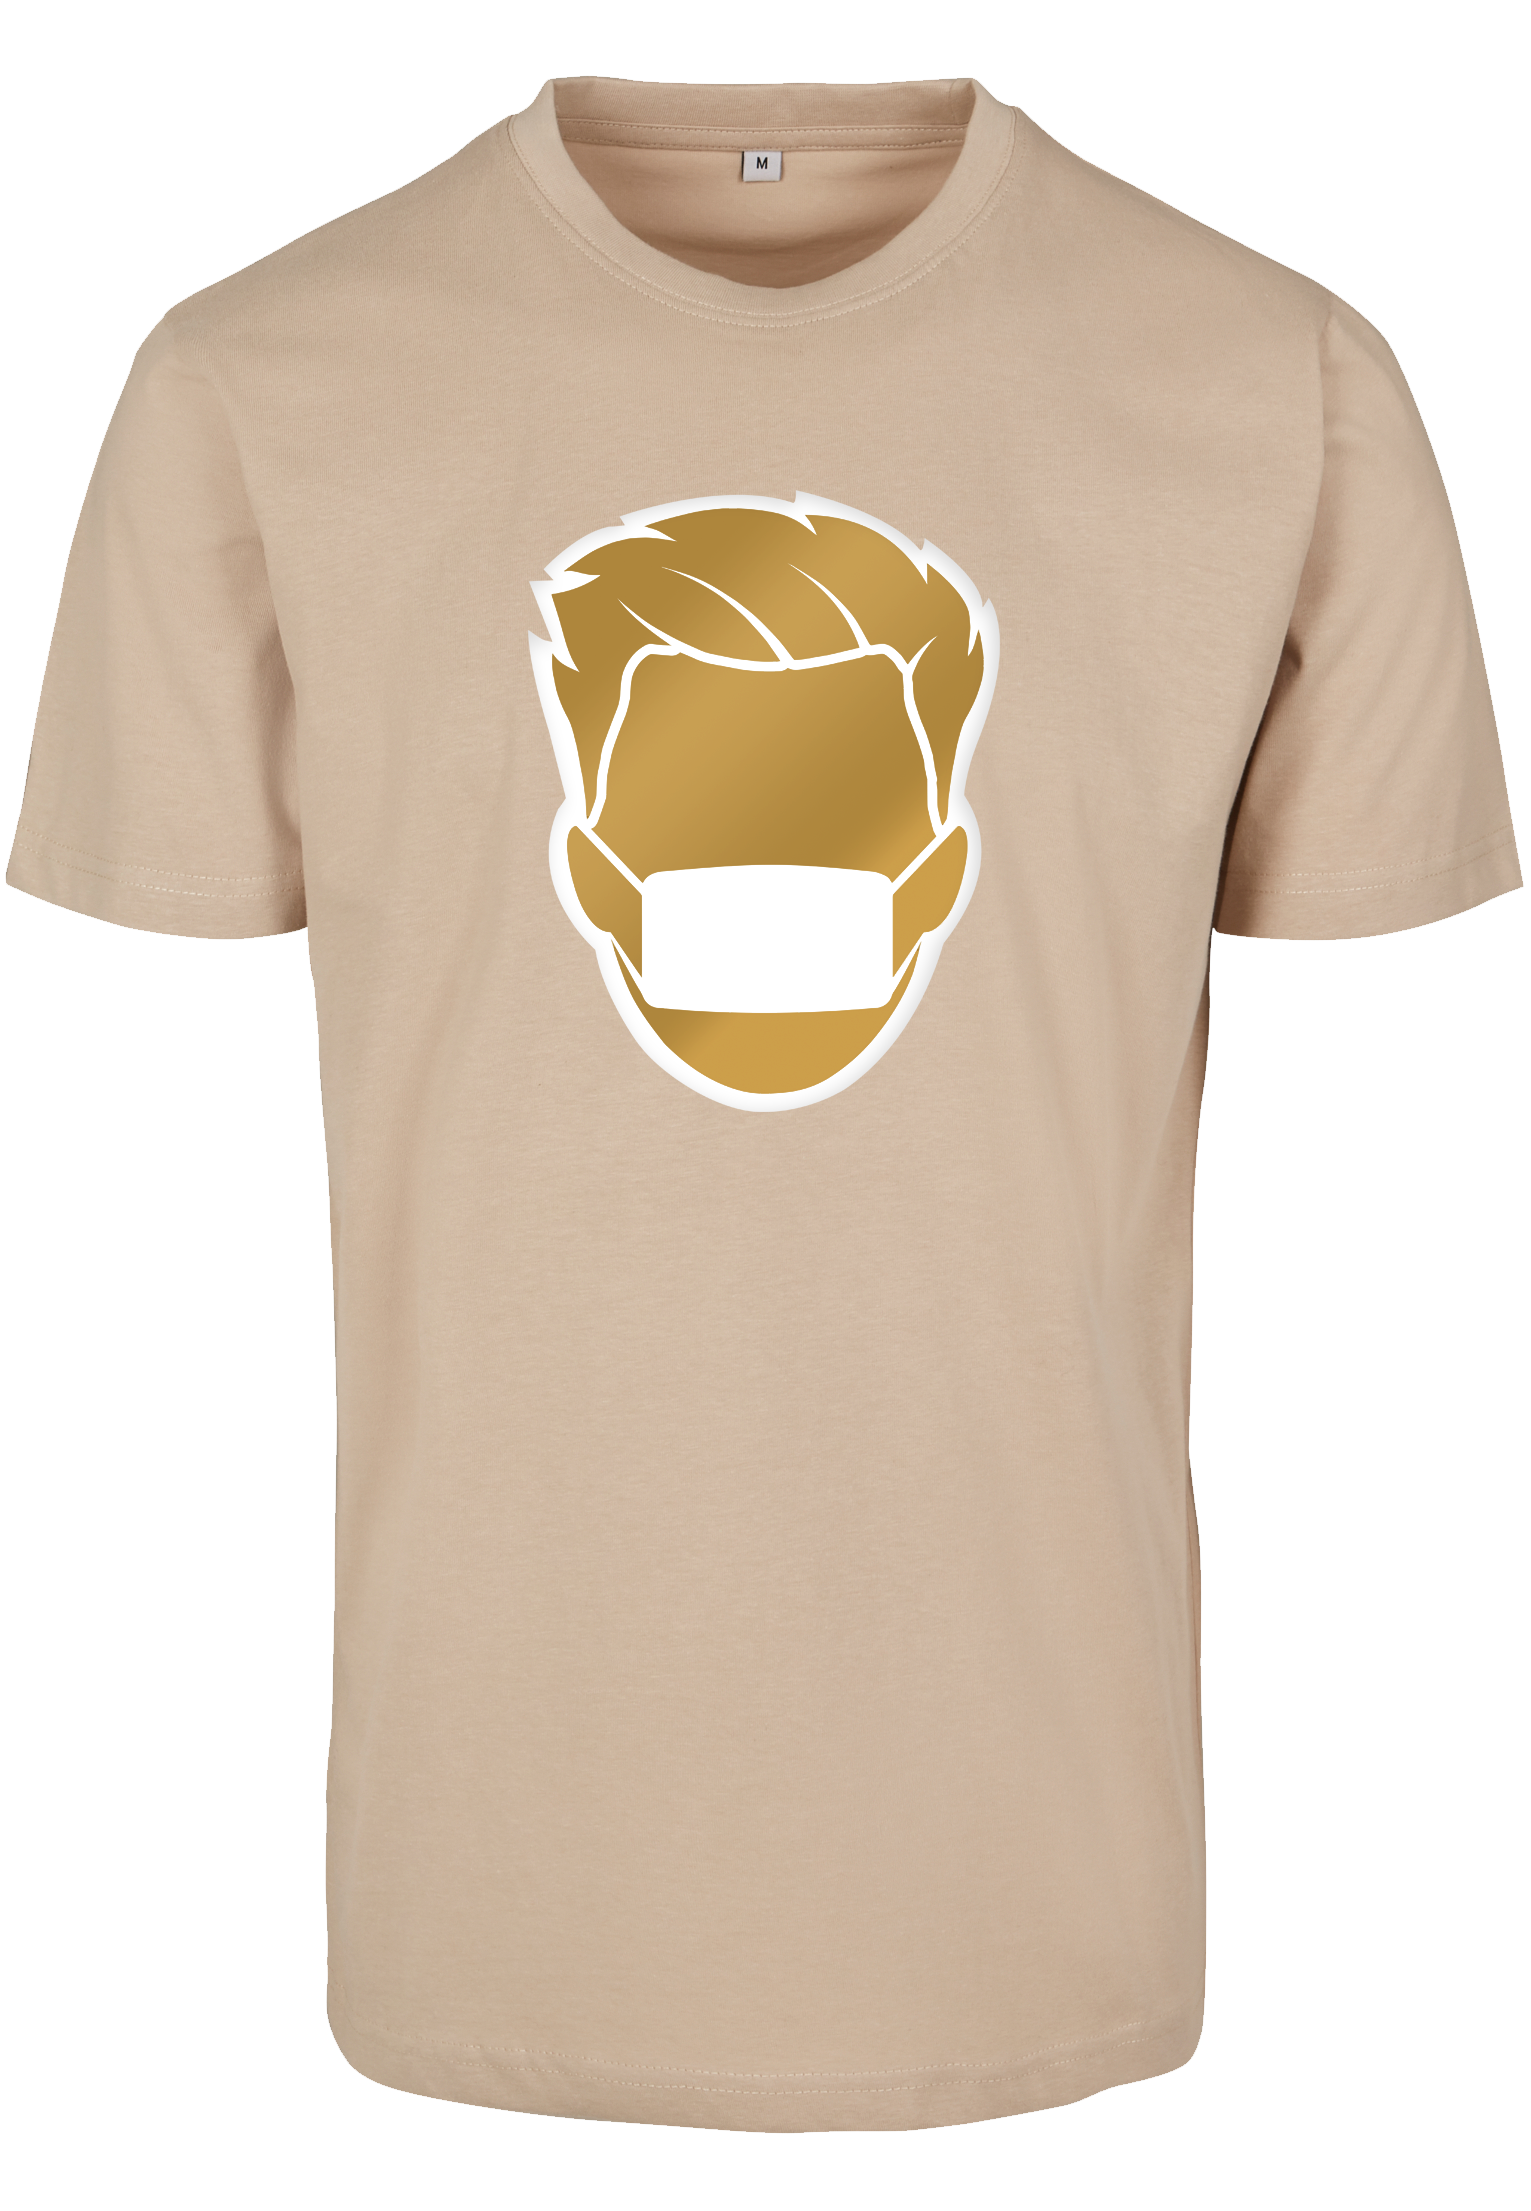 Goldakwa sand T-Shirt